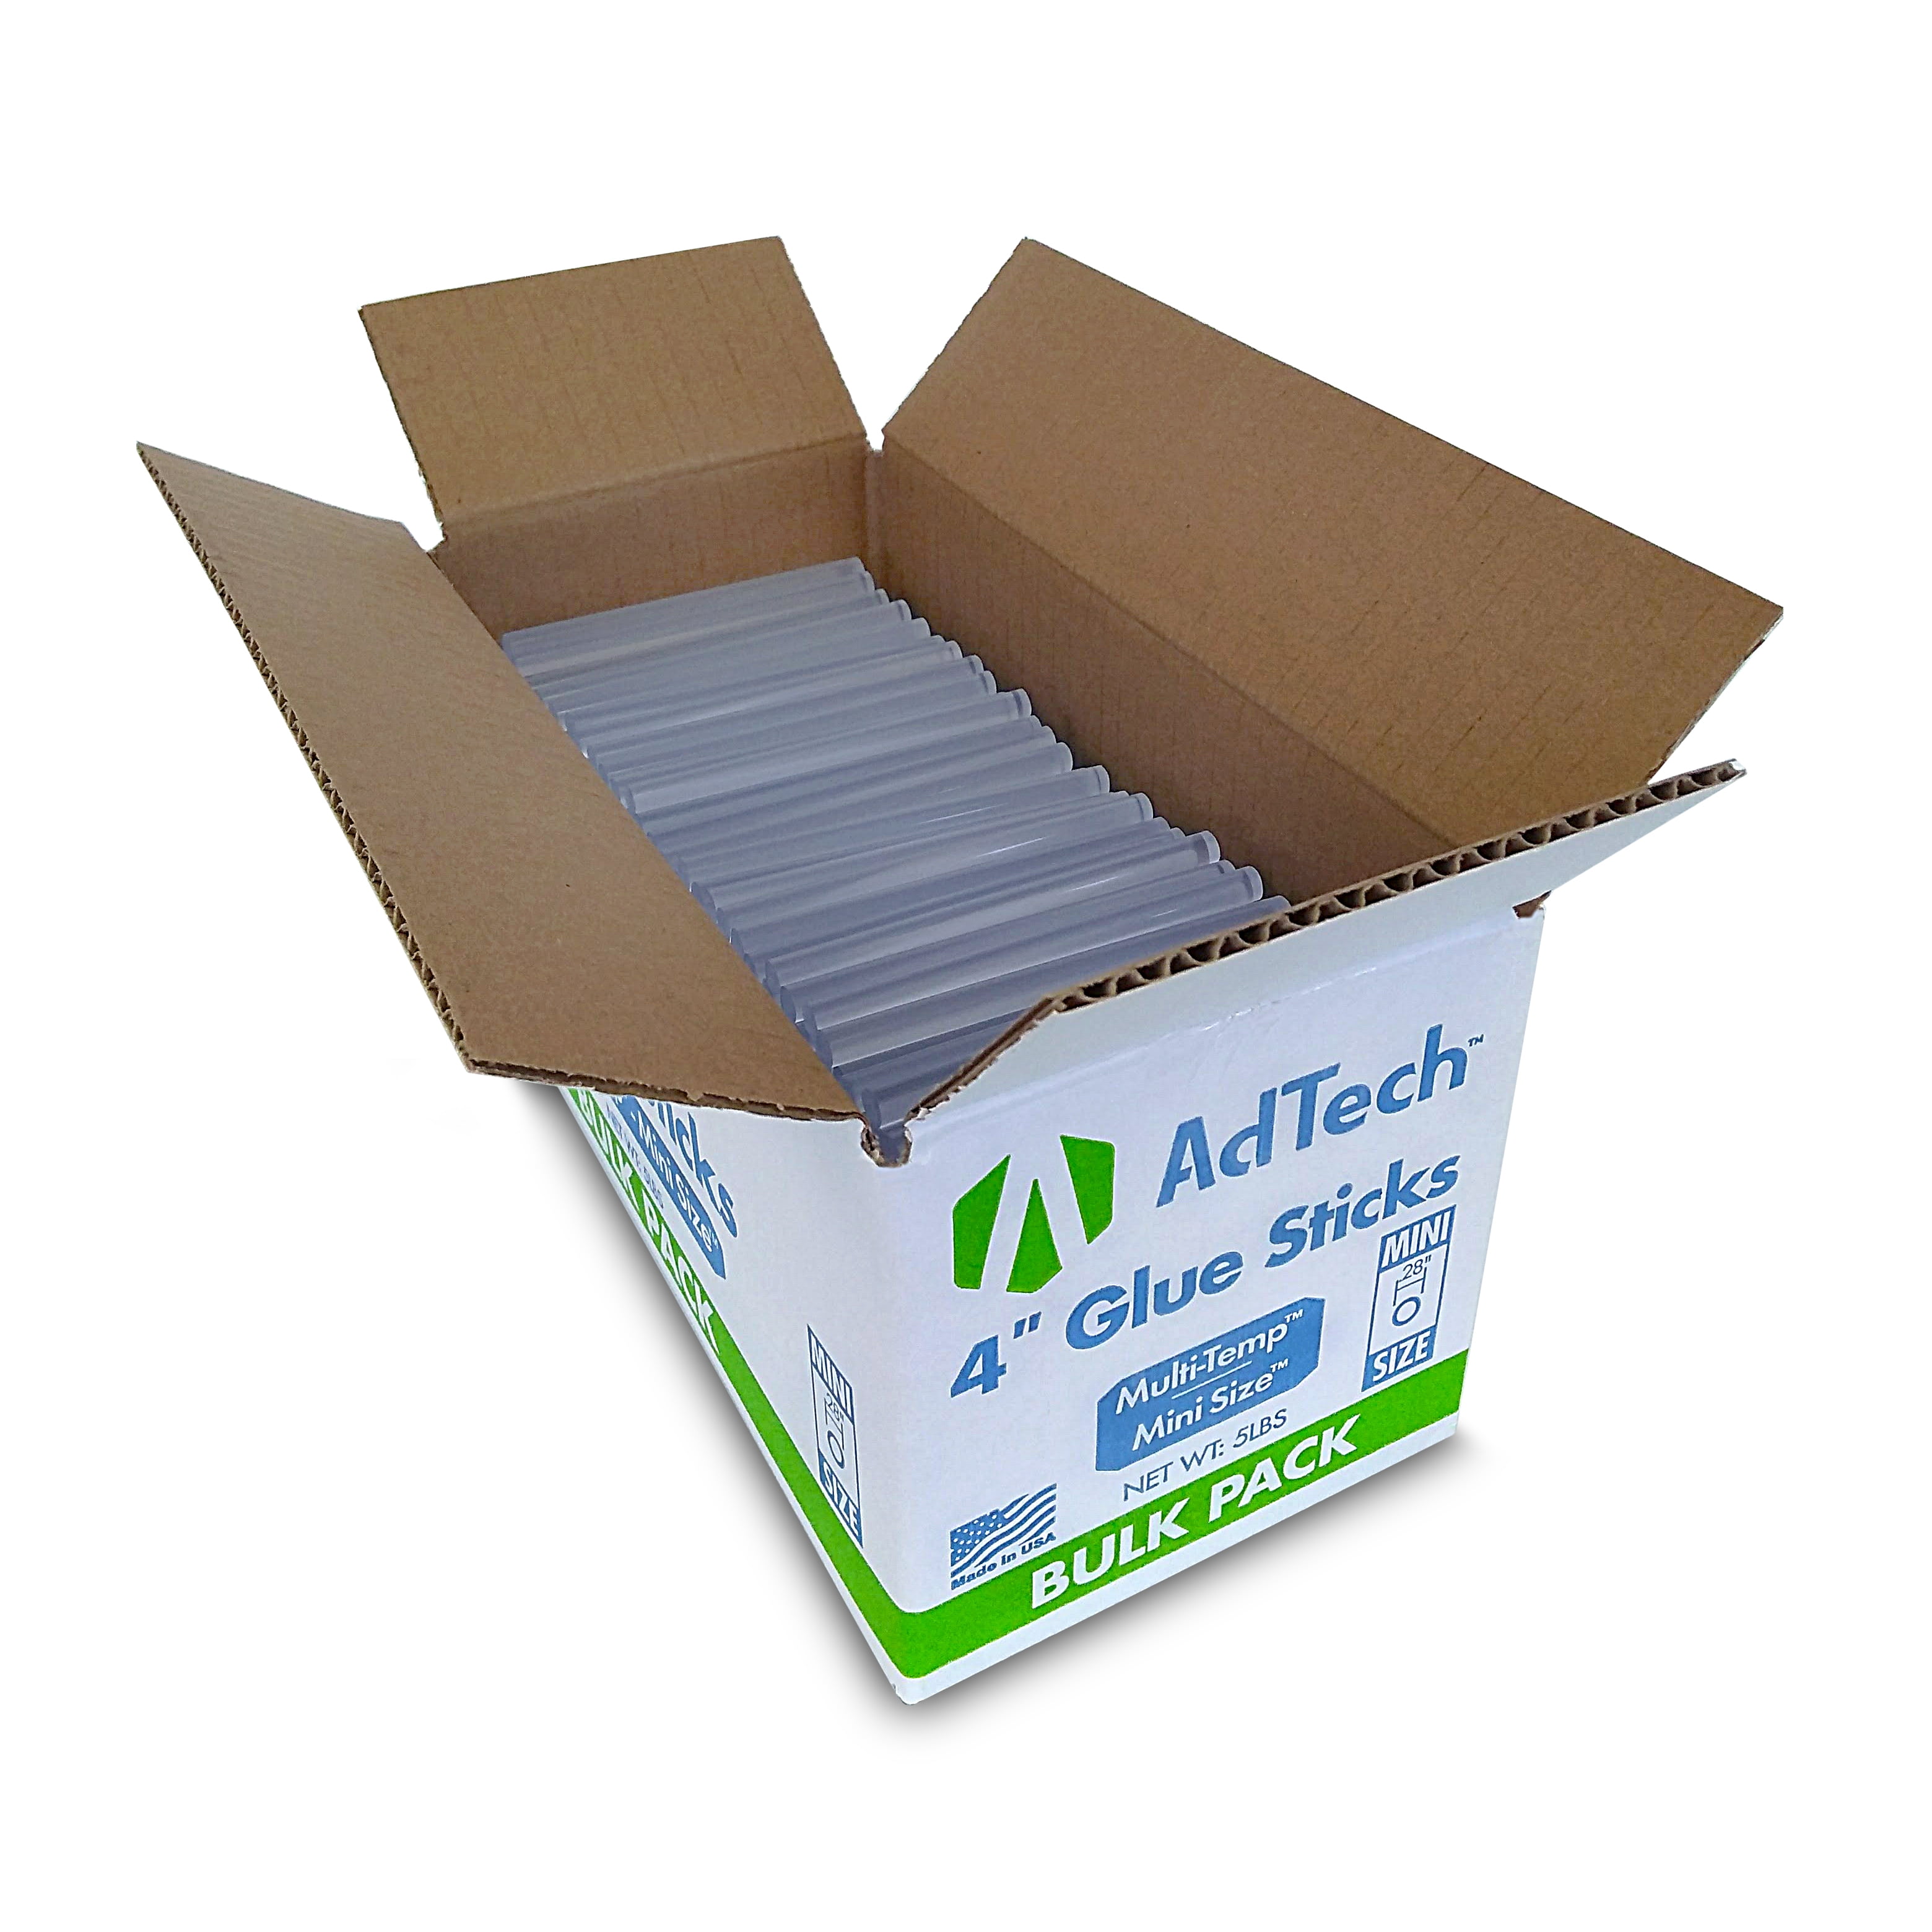 AdTech 4 5lb Box of Mini Size Multi-Temp Hot Glue Sticks, Clear 